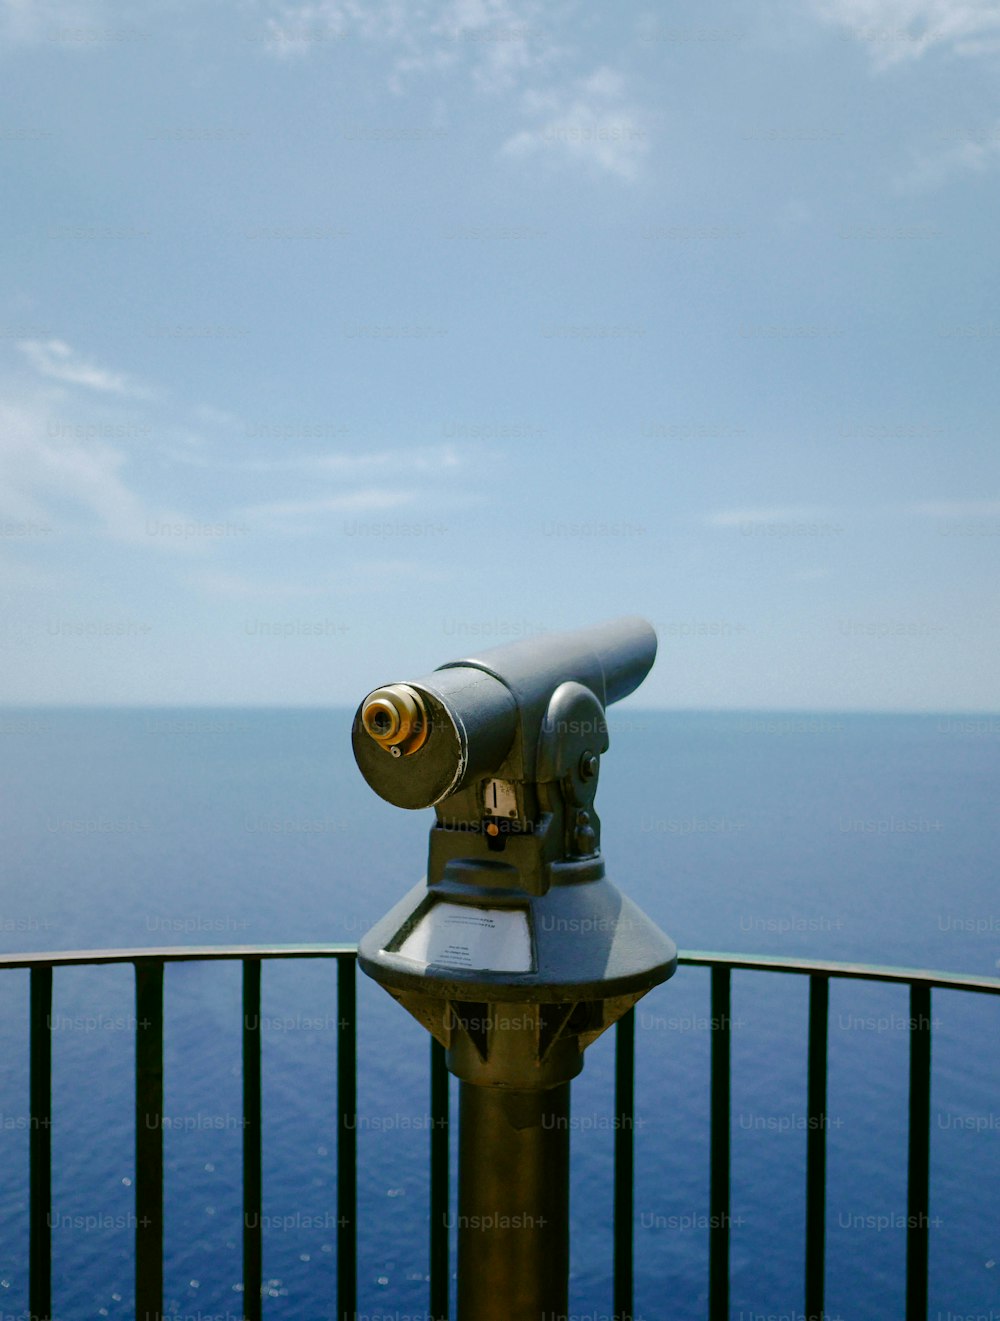 Un telescopio sentado encima de un poste de metal